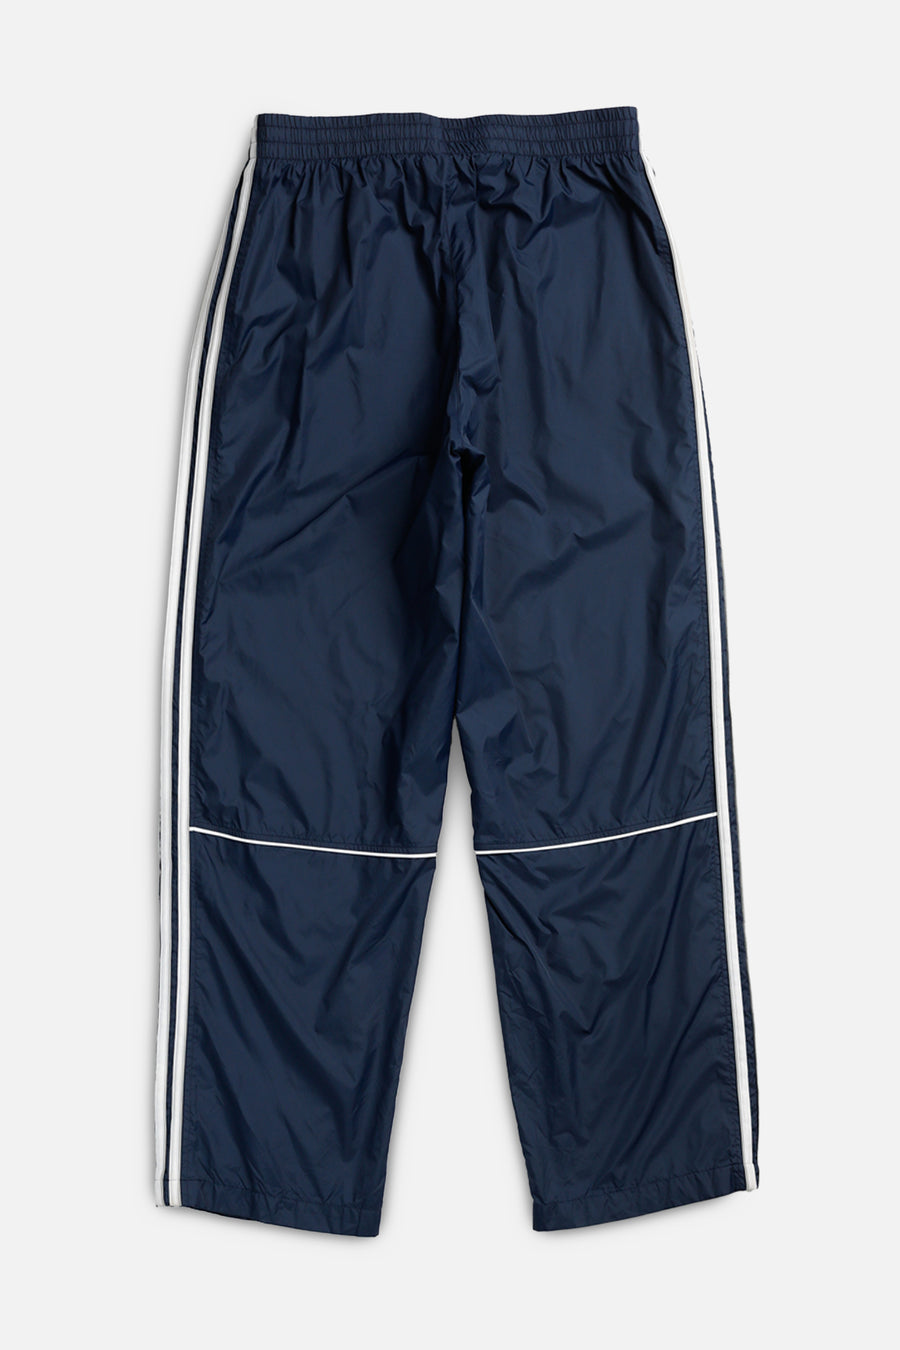 Vintage Adidas Windbreaker Pants - L